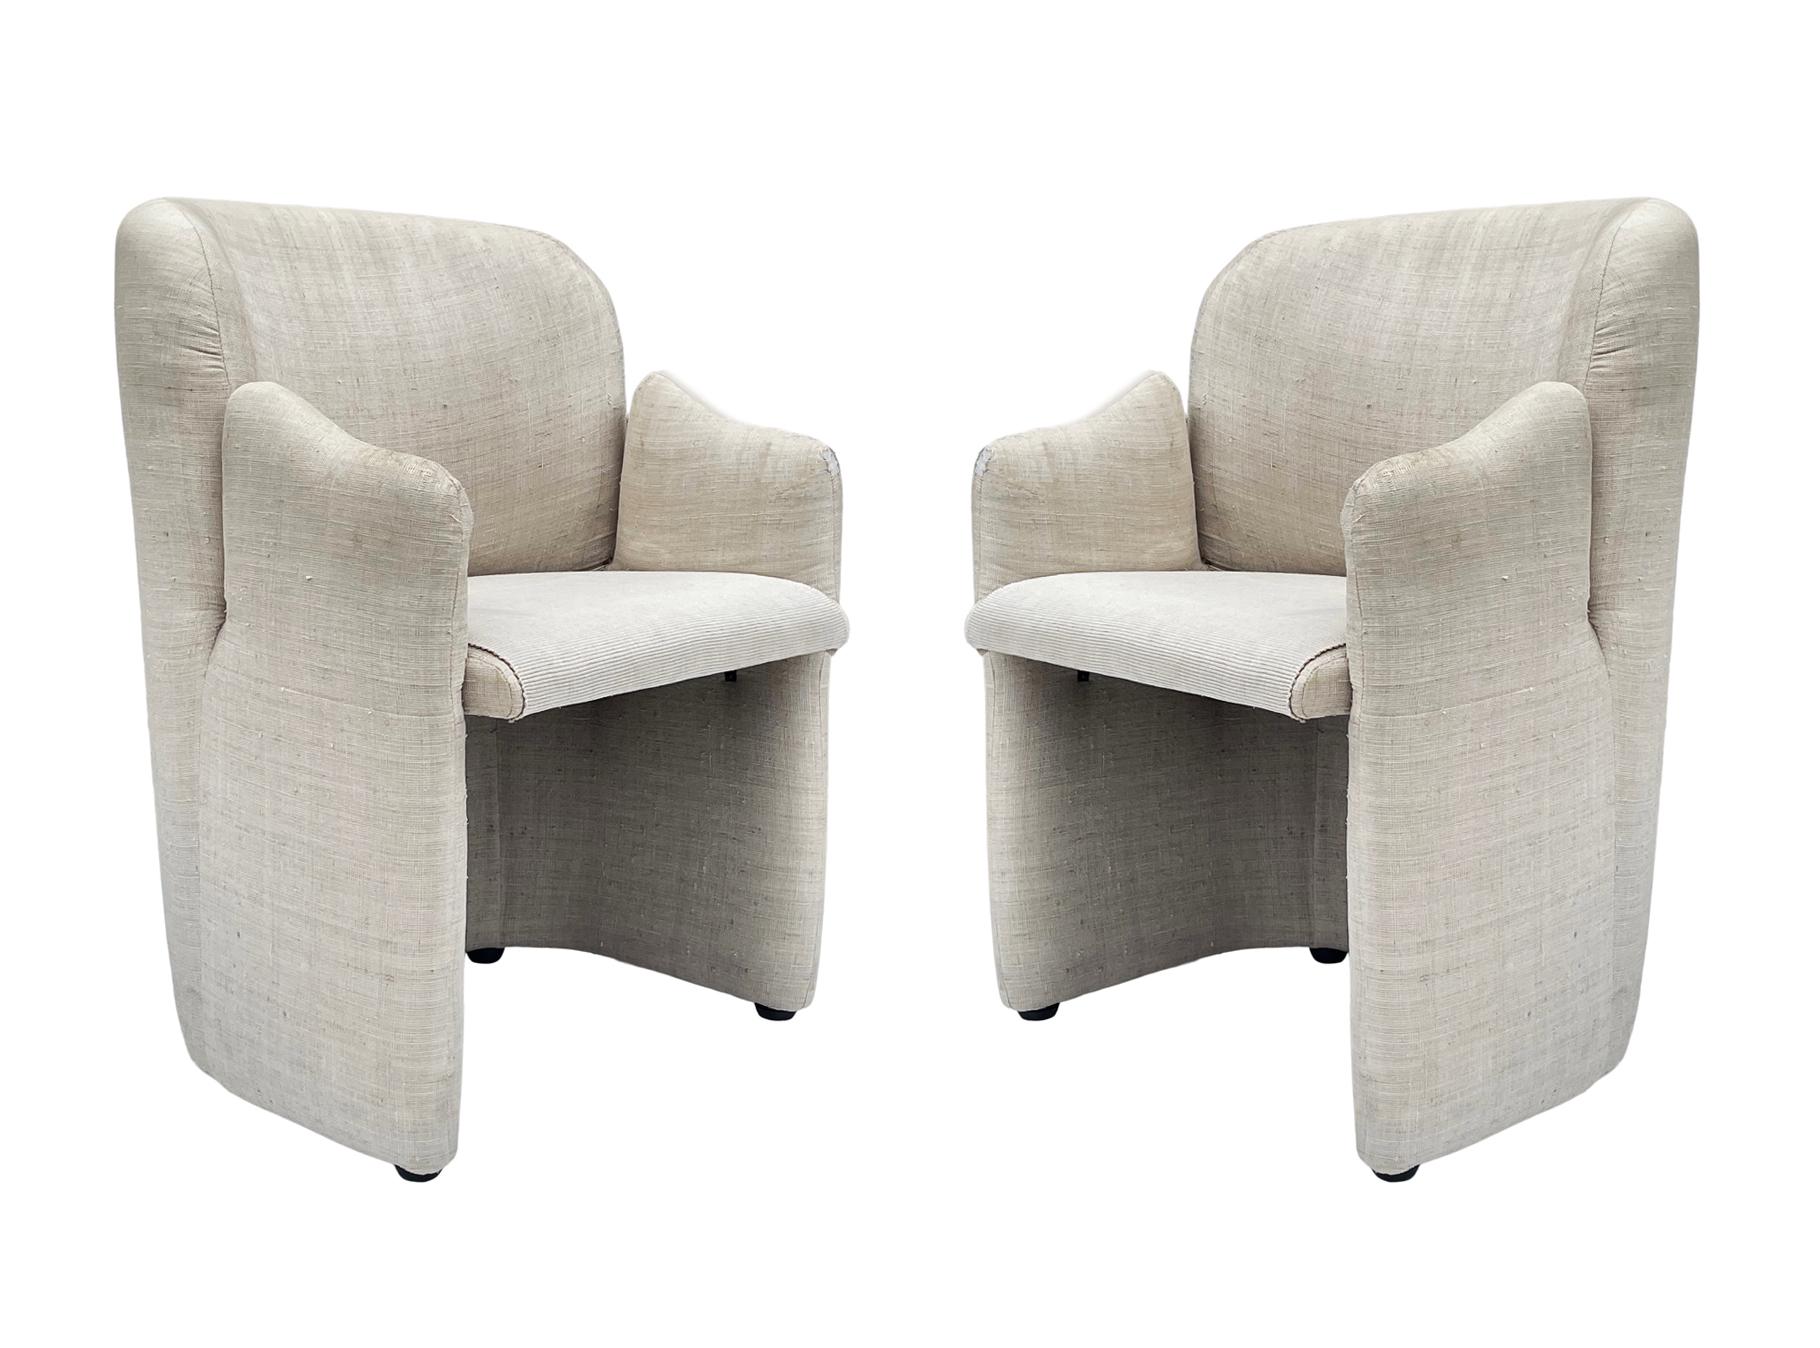 matching lounge chairs